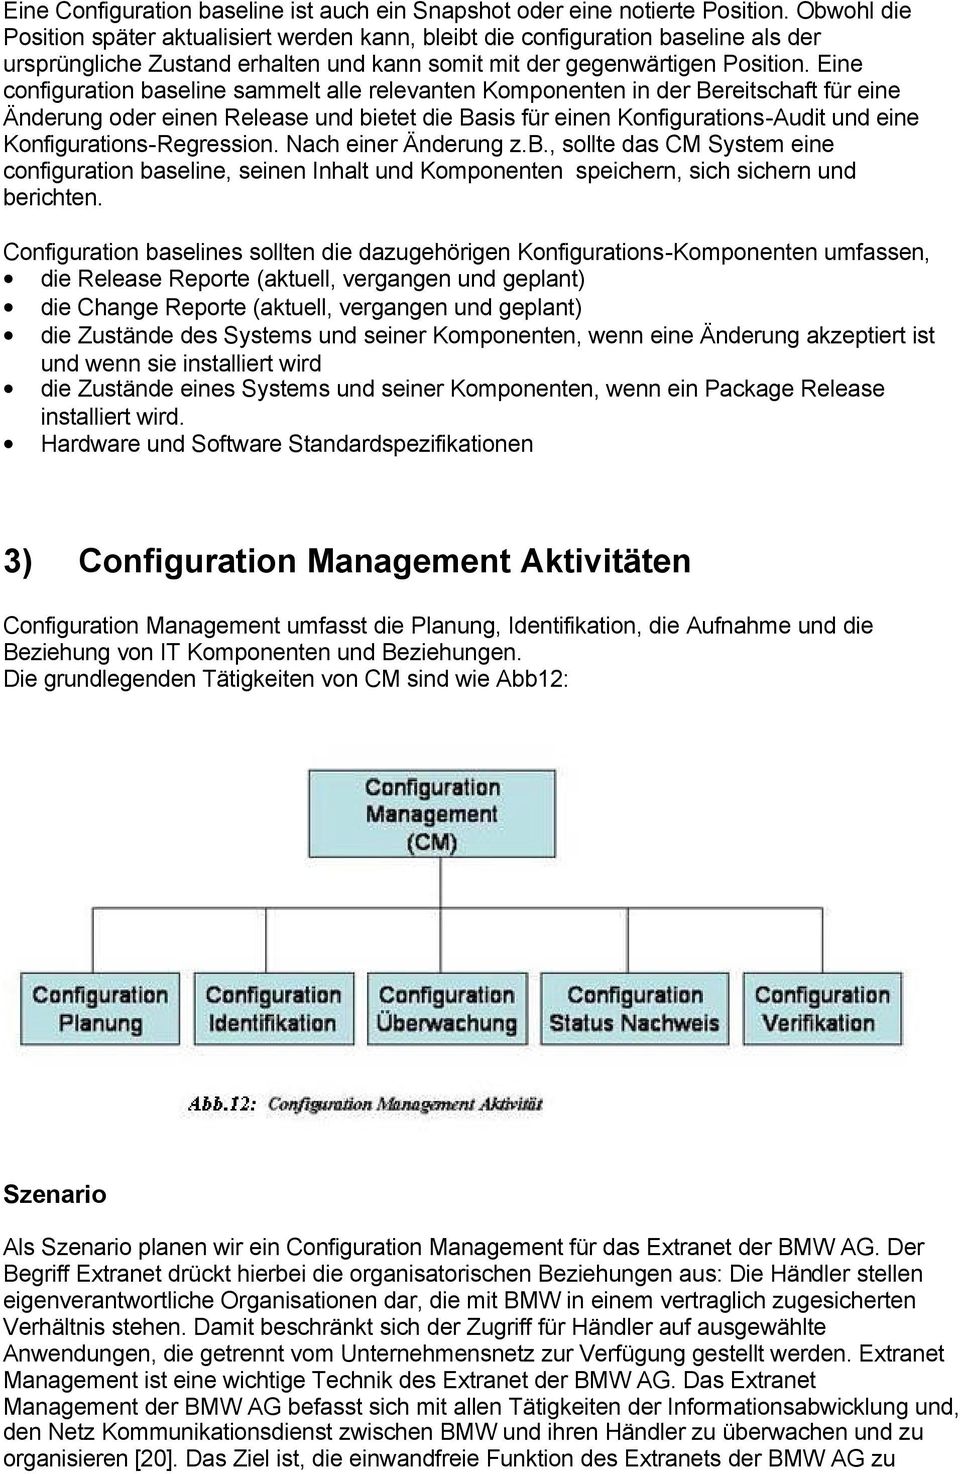 Eine configuration baseline sammelt alle relevanten Komponenten in der Bereitschaft für eine Änderung oder einen Release und bietet die Basis für einen Konfigurations-Audit und eine